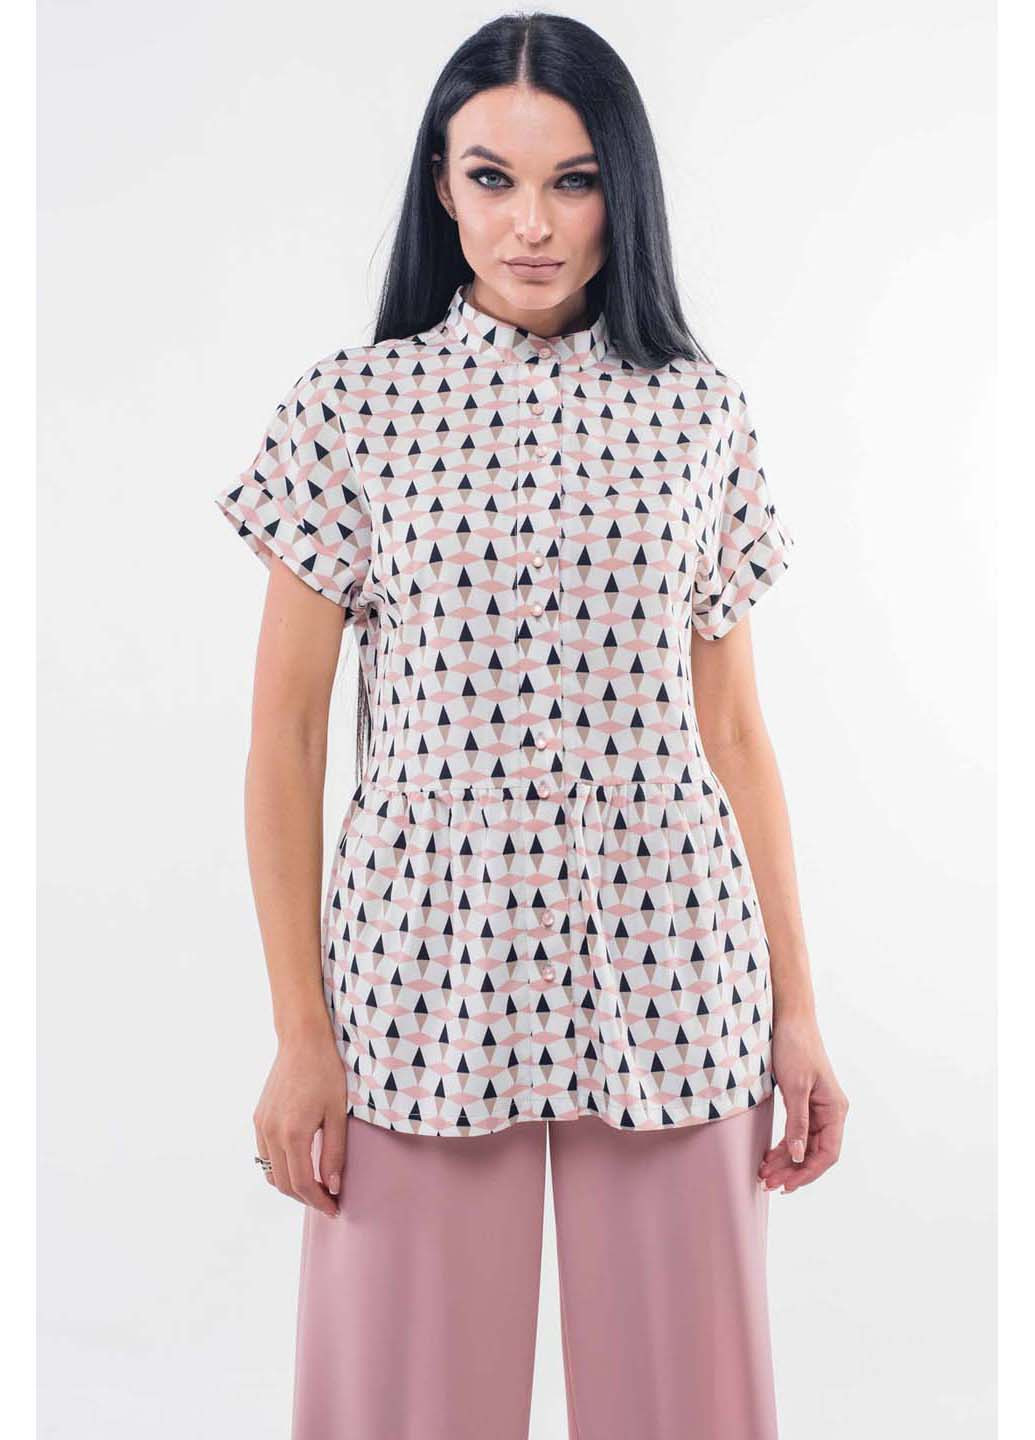 Комбинированная демисезонная блуза Ри Мари